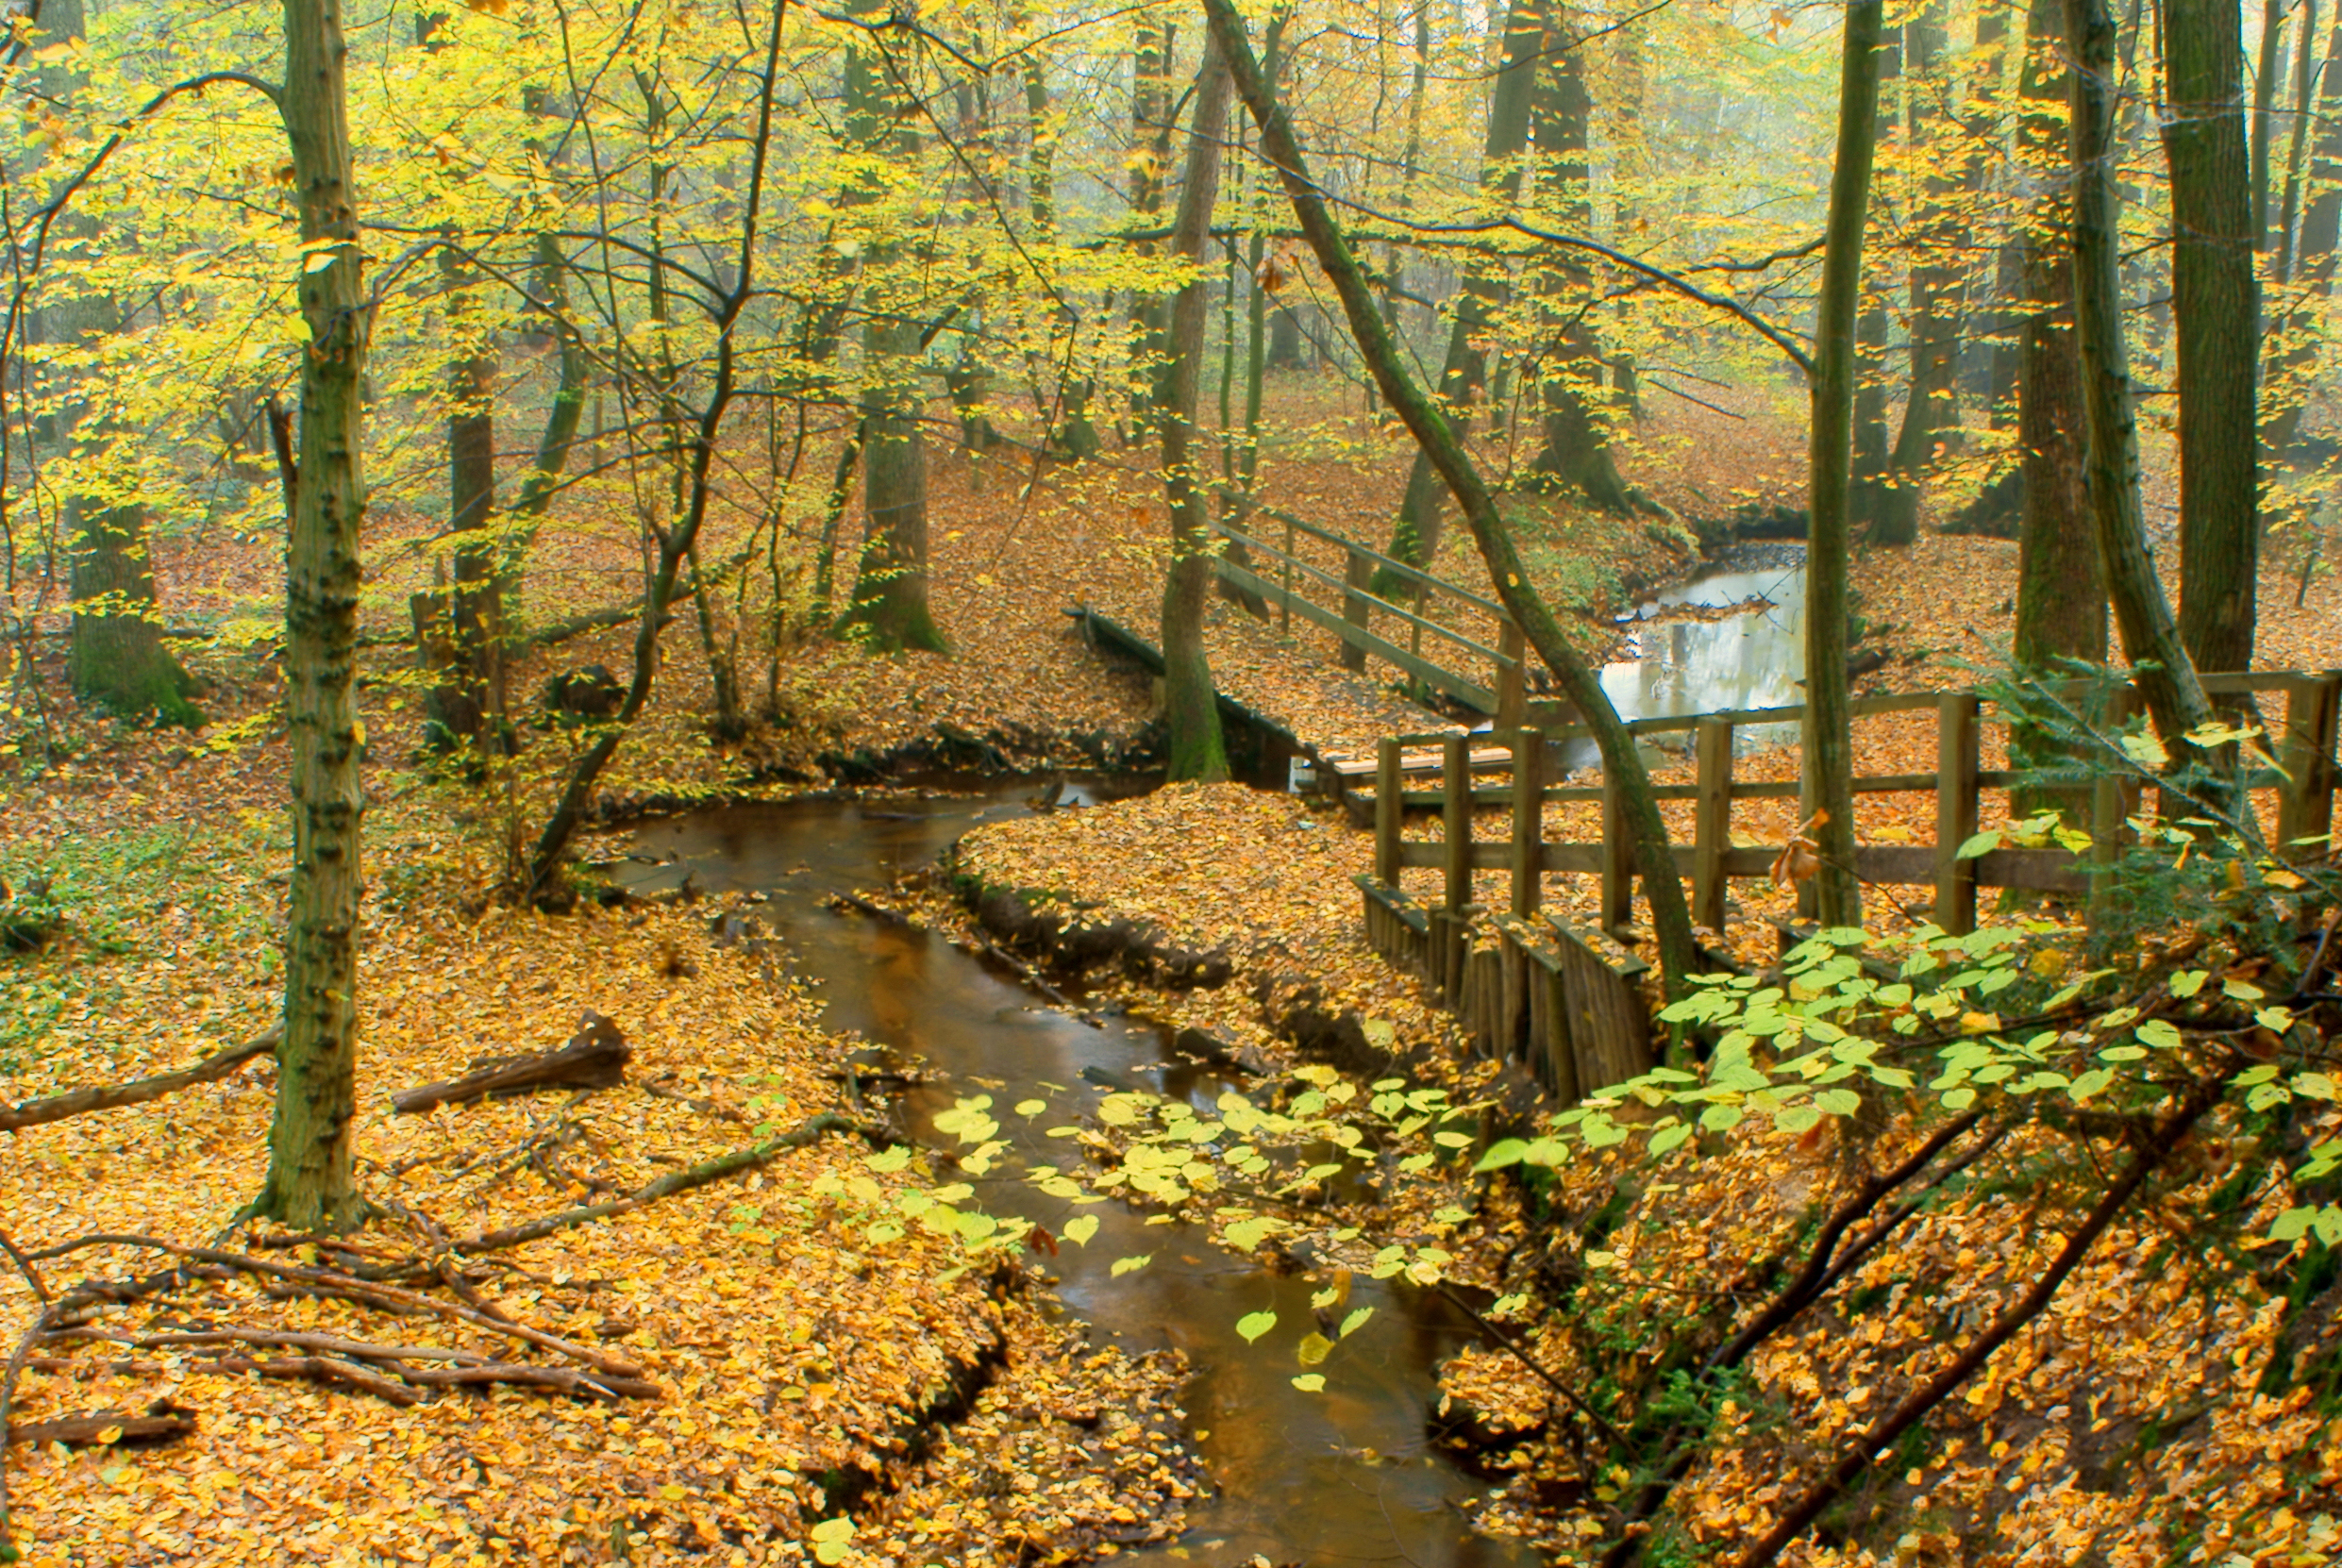 Rezerwat "Rosochacz" w Lubieni - jesienny widok na mostek na rzeczce Świętojance.